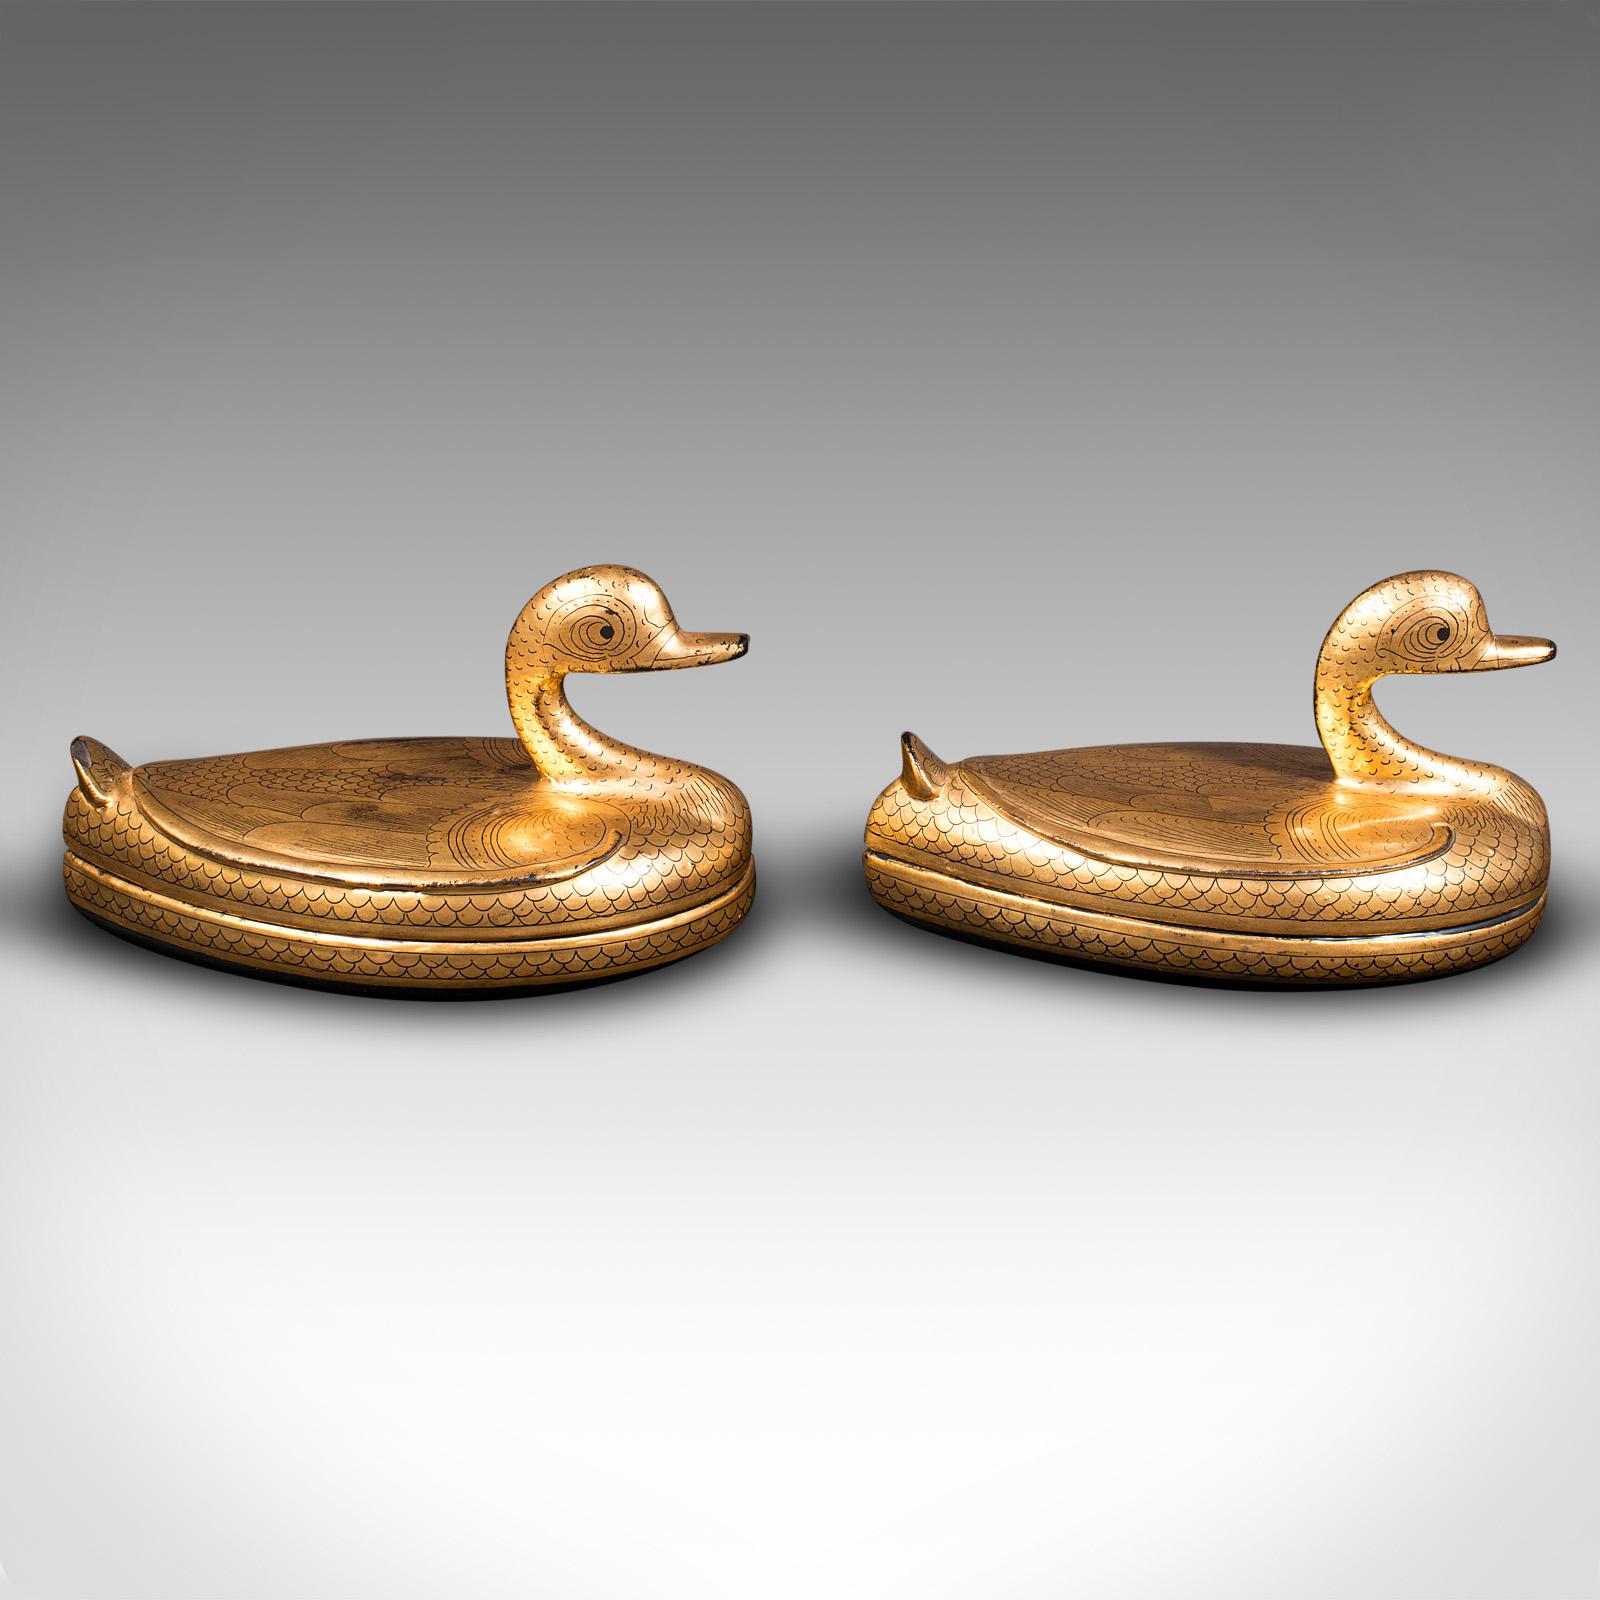 Art Deco Pair Of Vintage Duck Form Pots, Oriental, Lacquer, Gilt, Decorative, Trinket Box